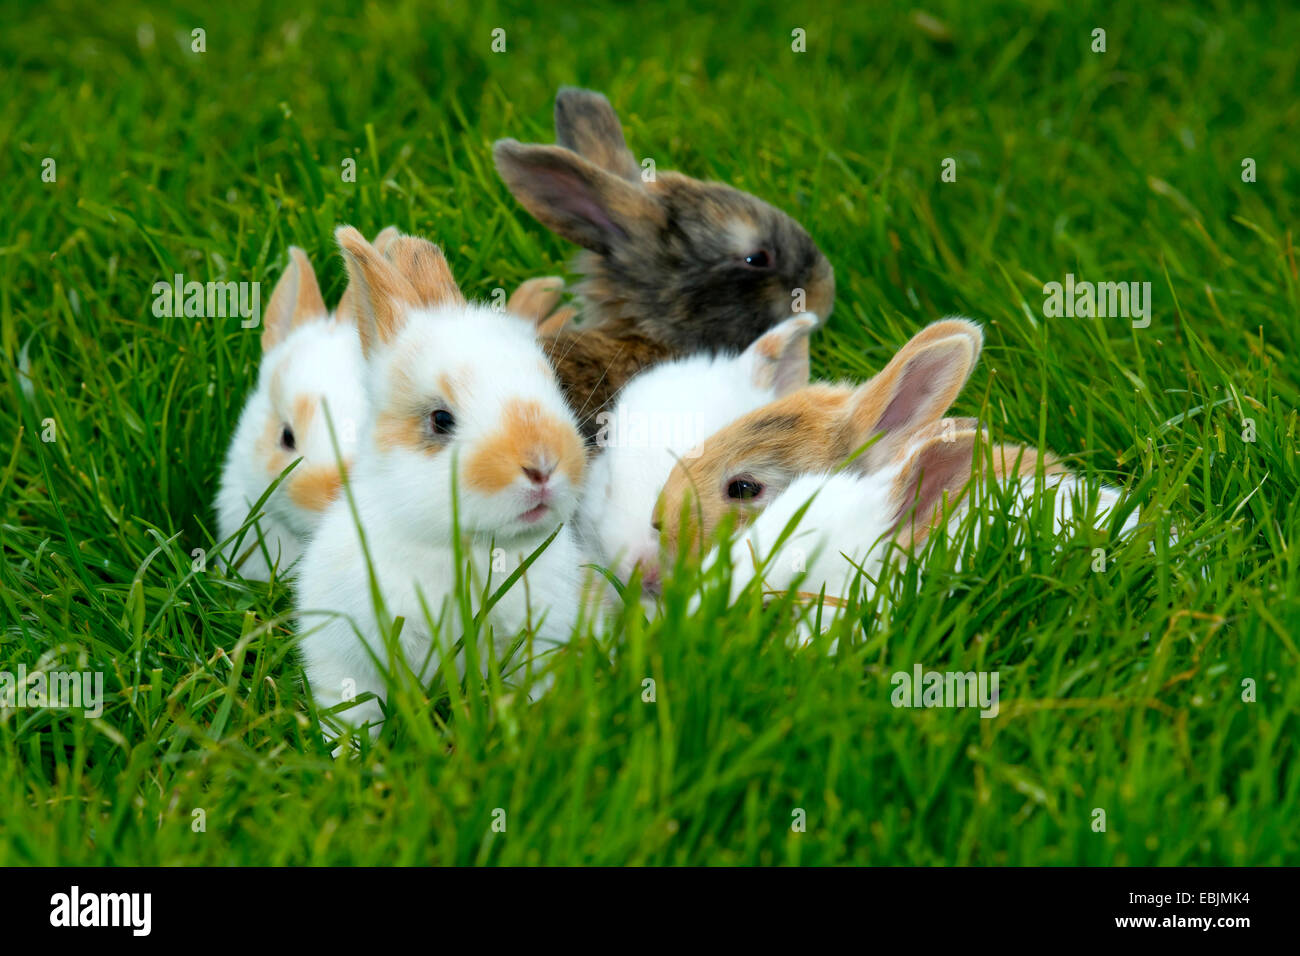 Lapin domestique (Oryctolagus cuniculus f. domestica), des lapins dans l'herbe, Allemagne, Rhénanie du Nord-Westphalie Banque D'Images